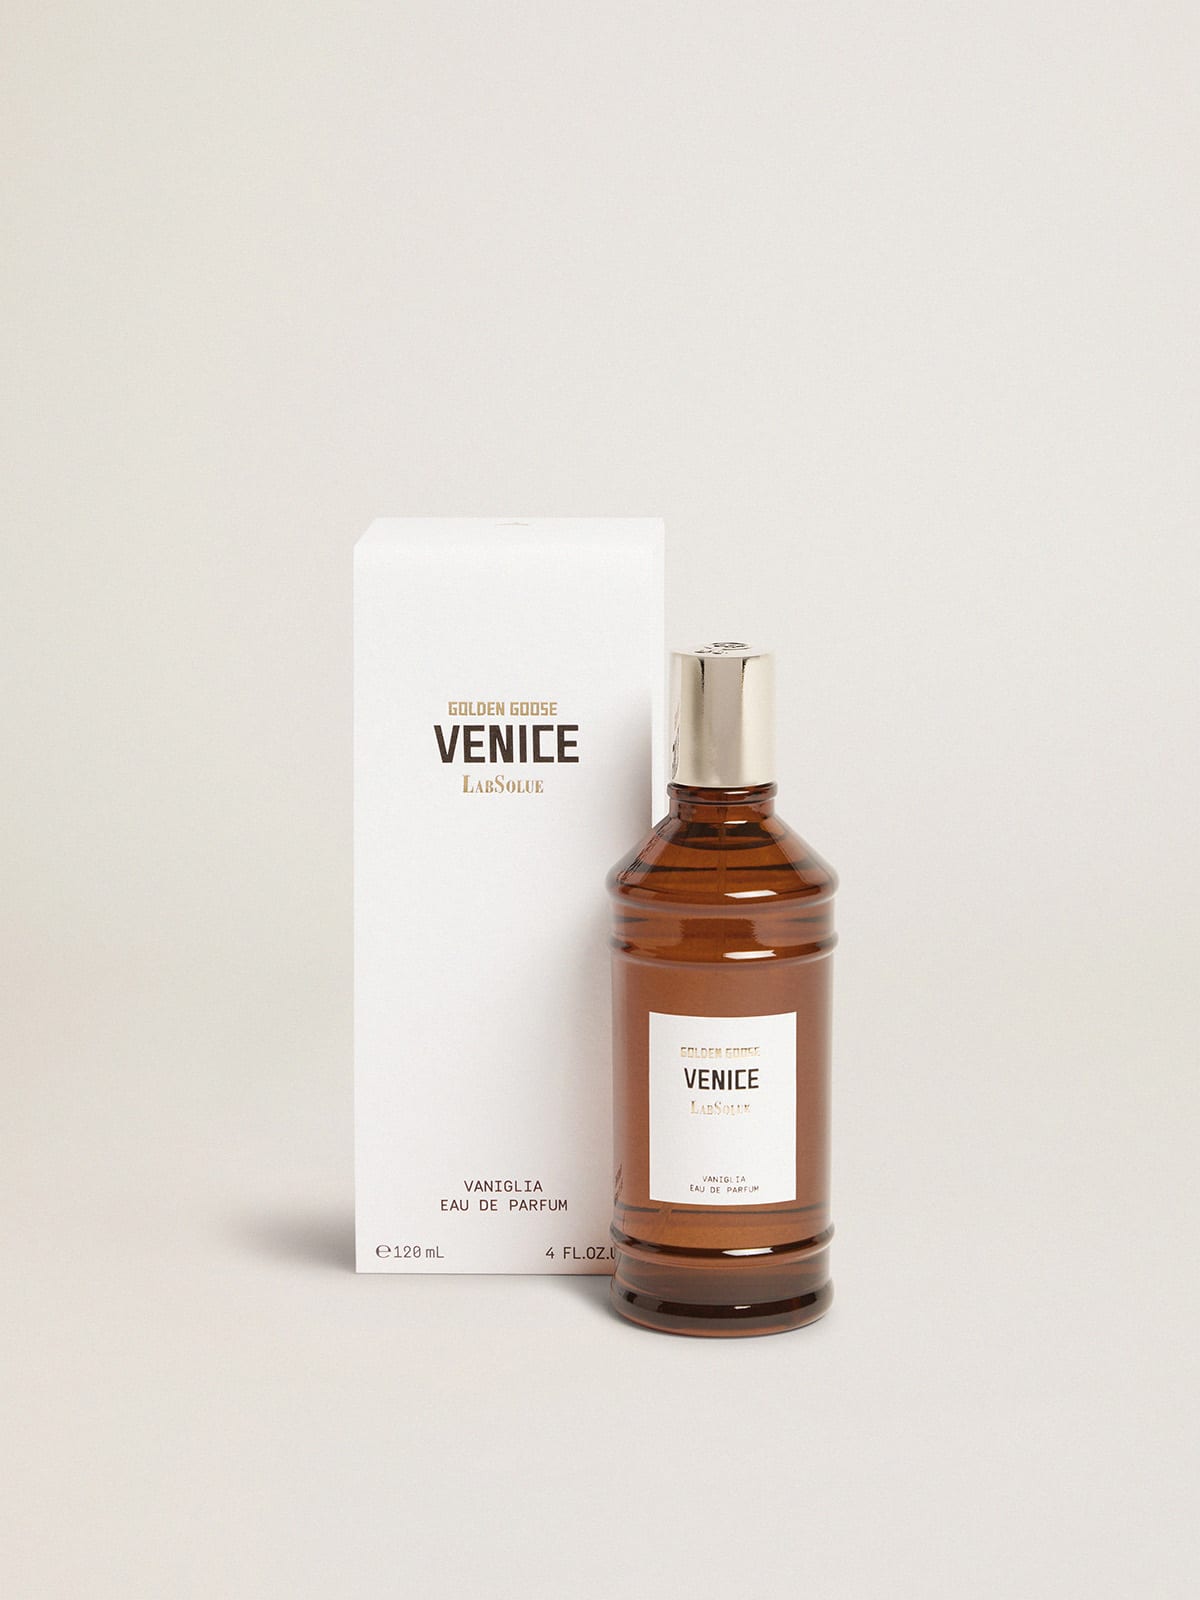 Golden Goose - Venice Essence Vainilla Eau de Parfum 120 ml in 